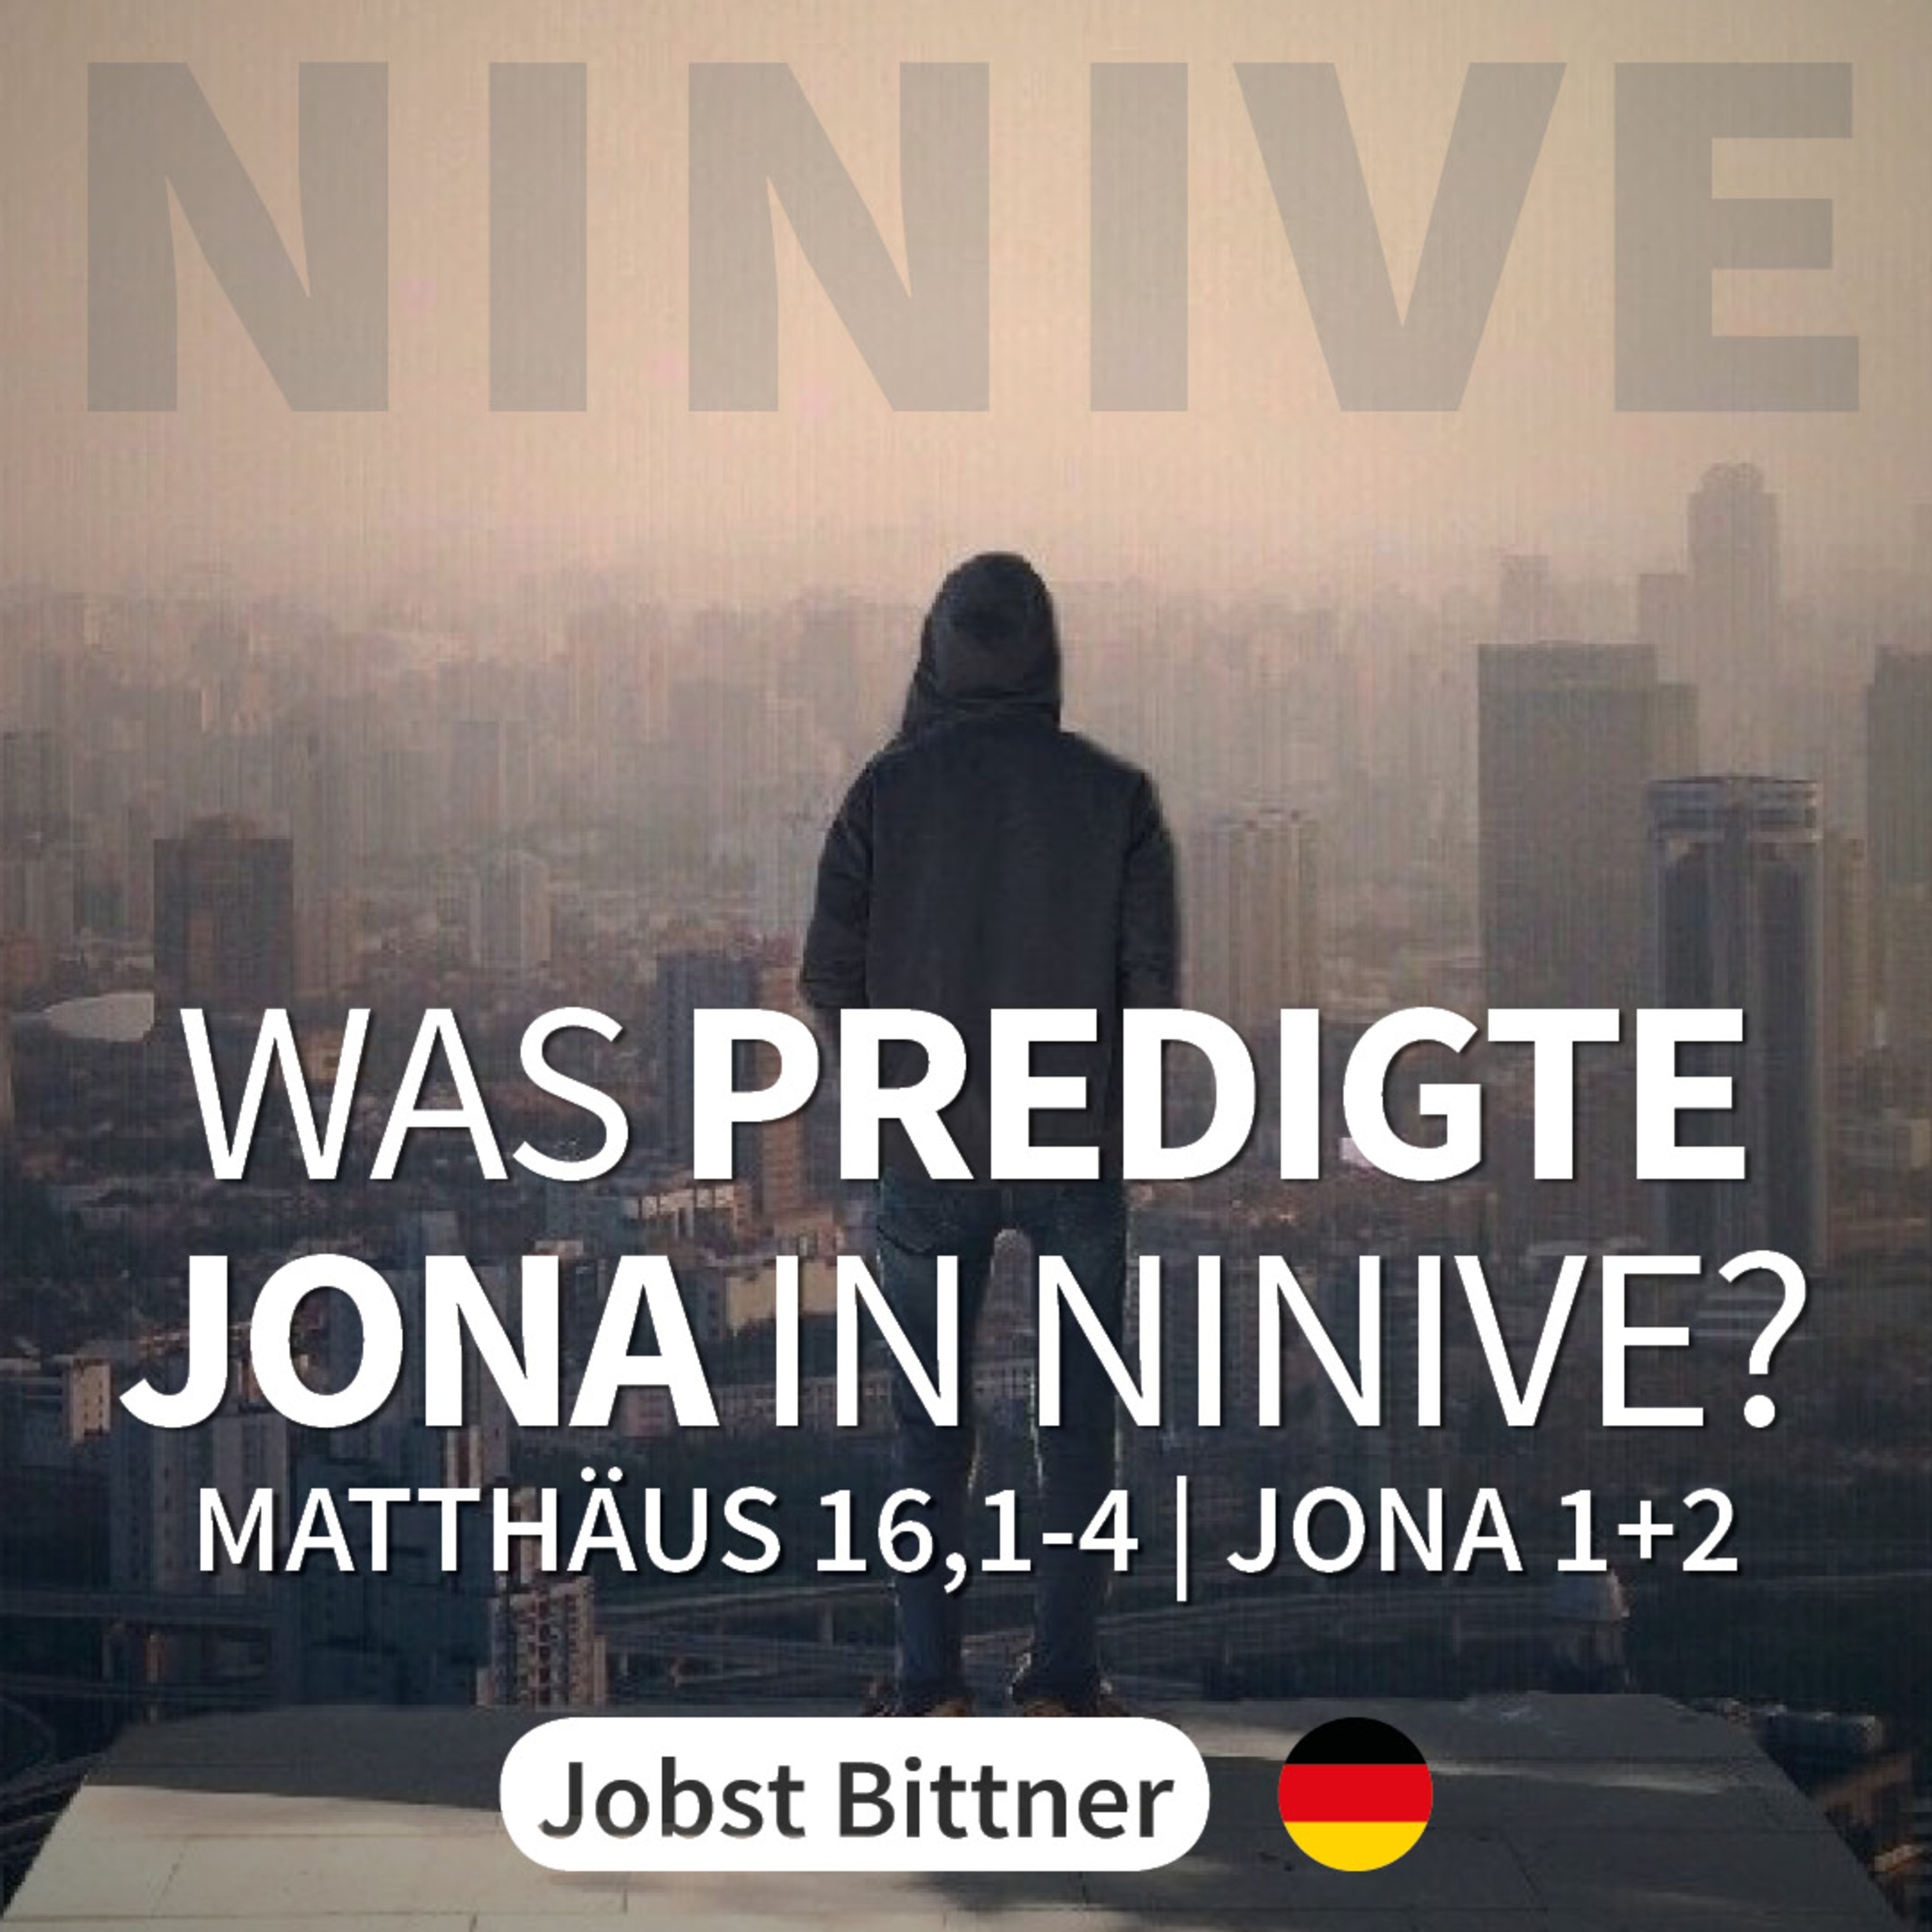 JOBST BITTNER - Was predigte Jona in Ninive? [Mt 16,1-4 & Jo 1+2] hero artwork